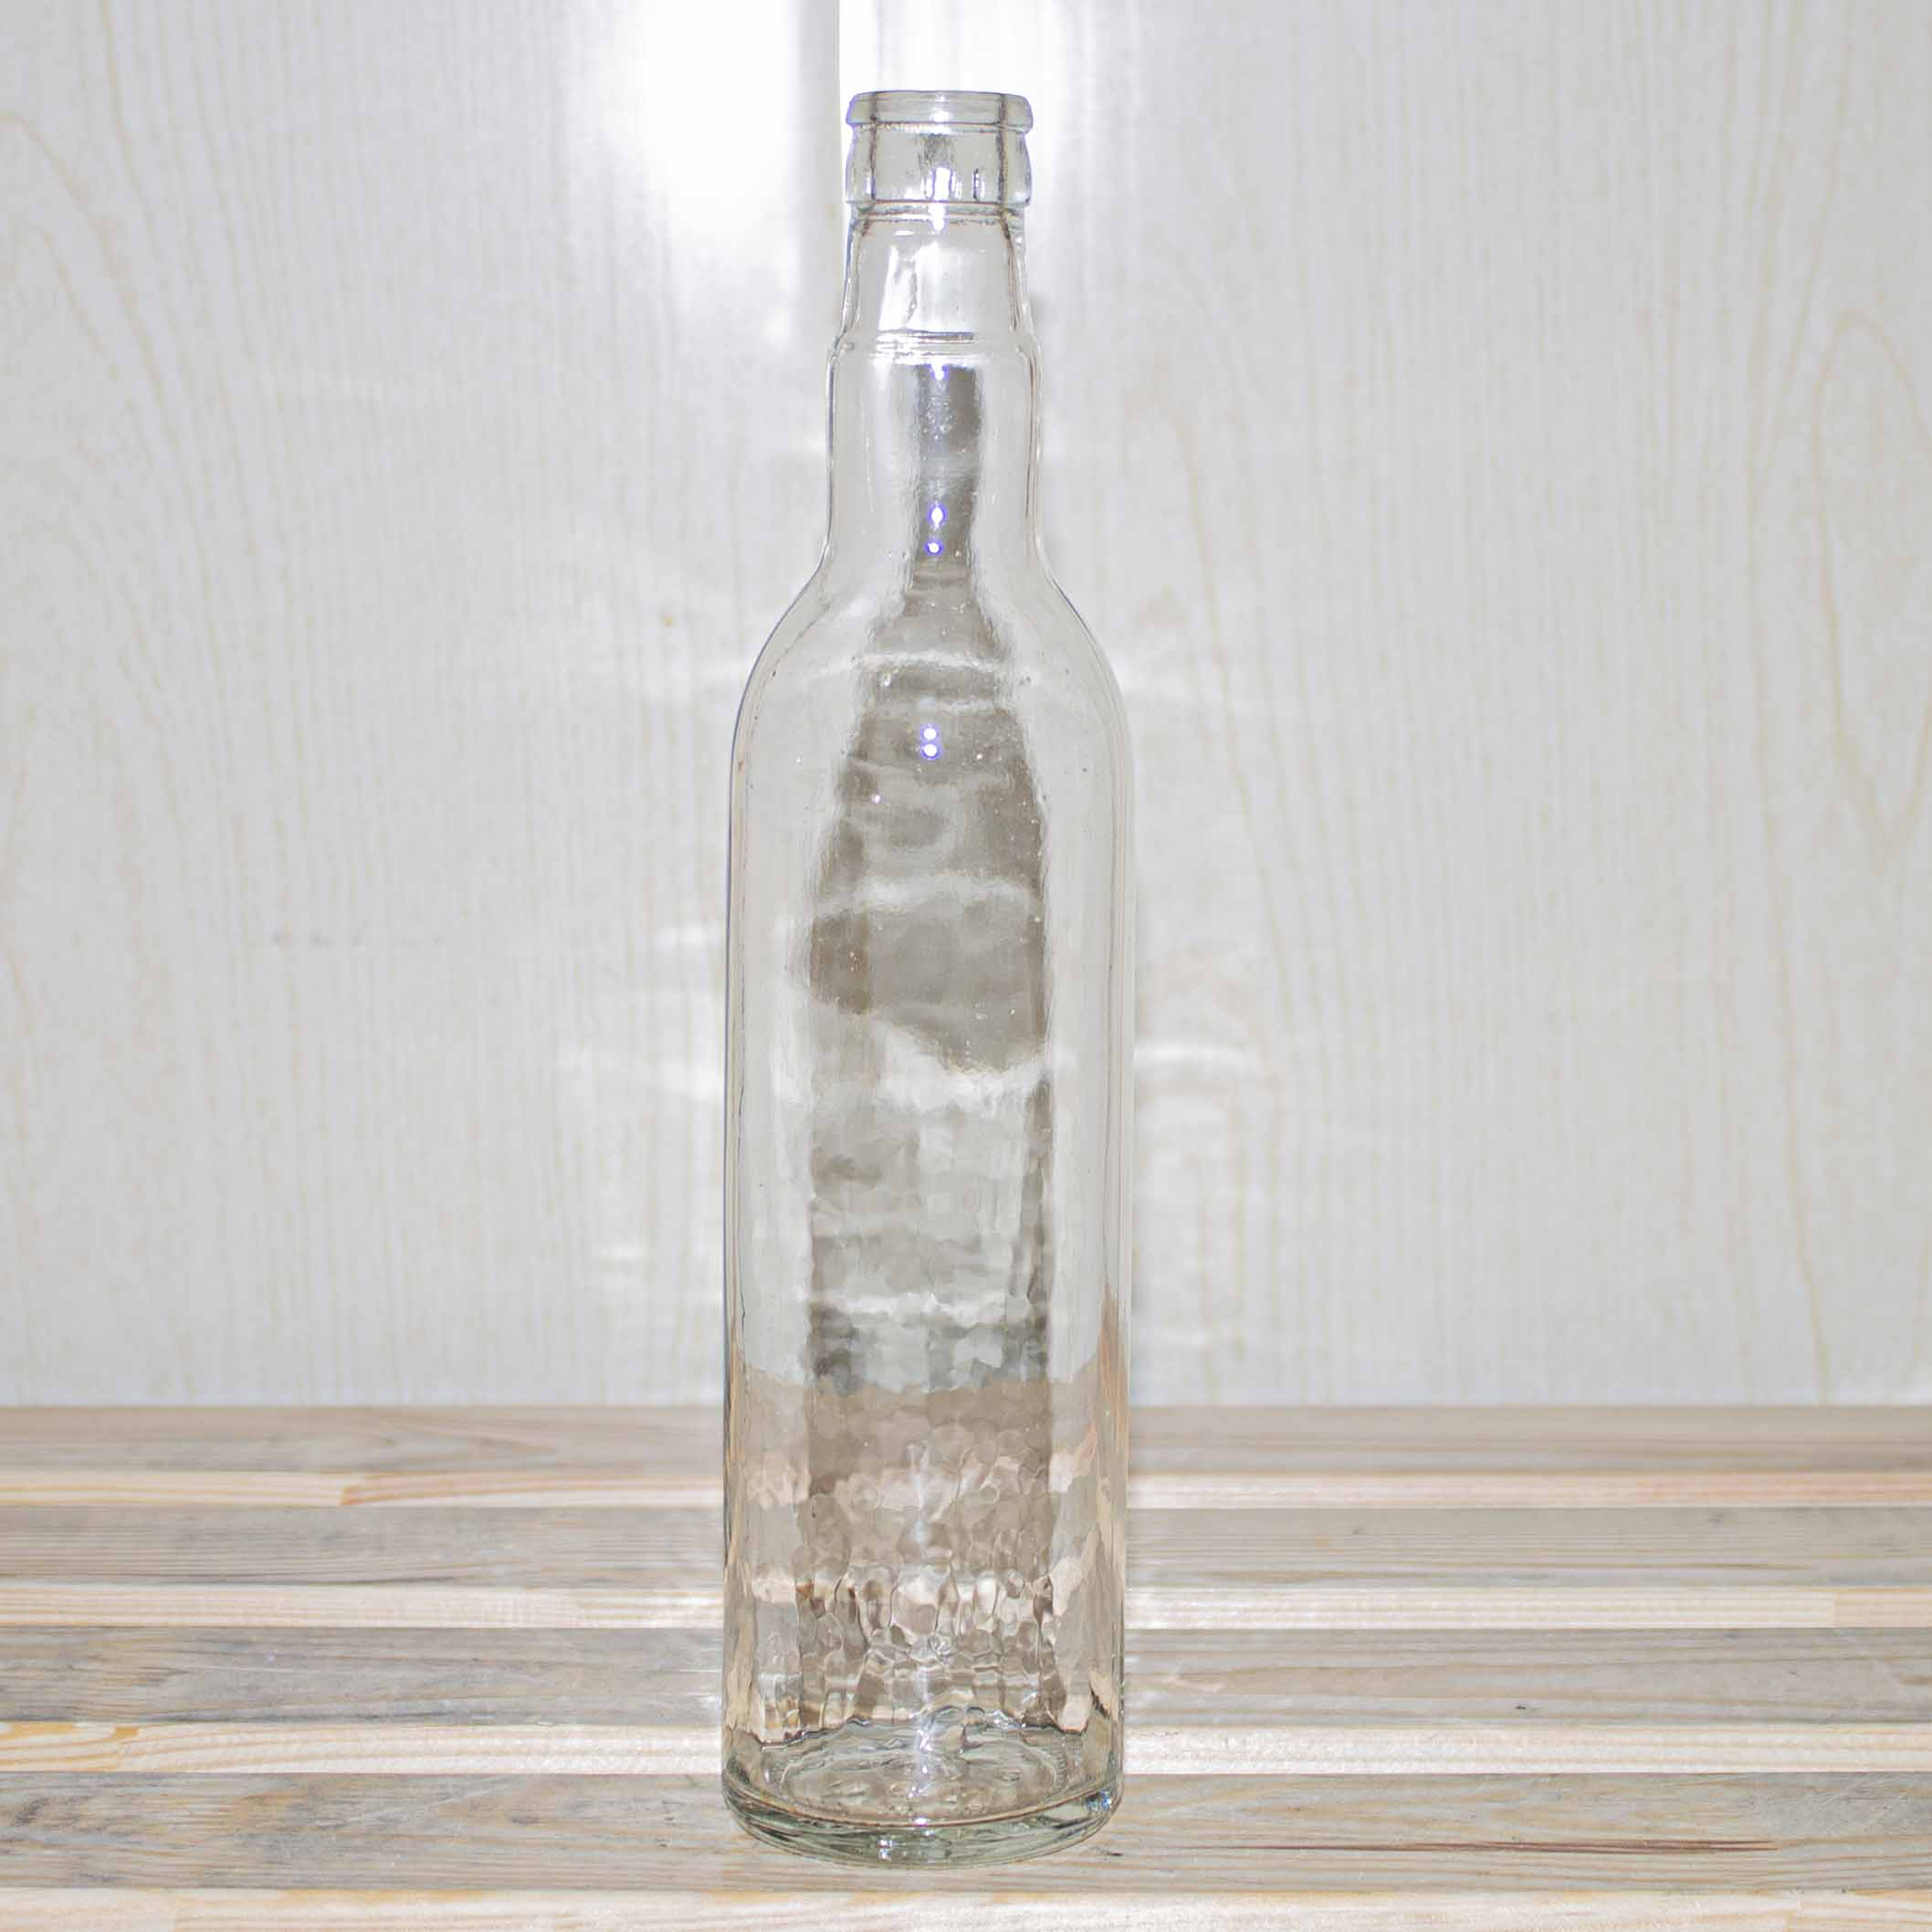 Бутылка водочная Гуала, 0,5 л